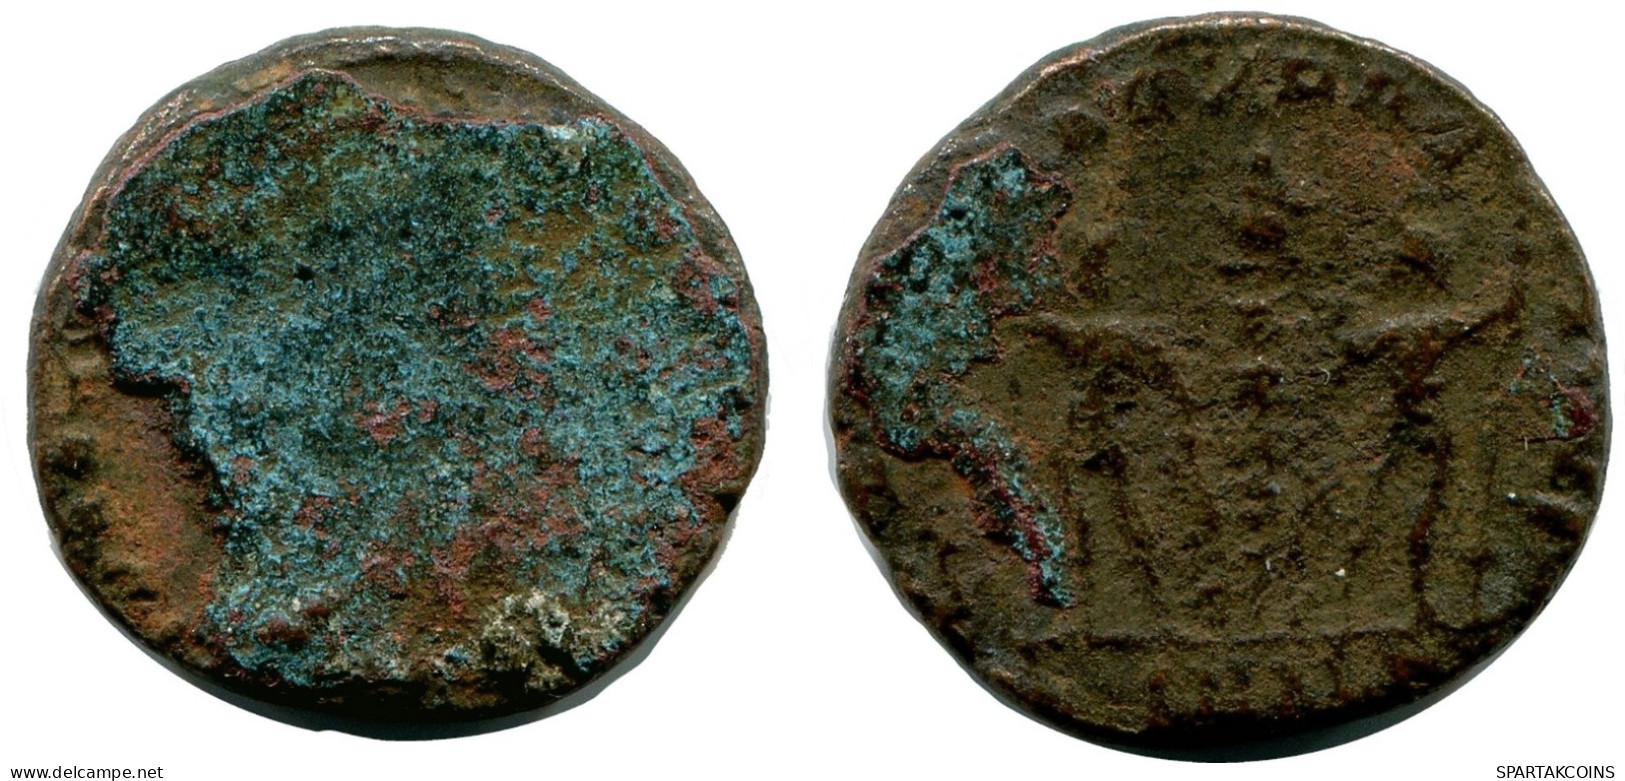 ROMAN Moneda MINTED IN ALEKSANDRIA FOUND IN IHNASYAH HOARD EGYPT #ANC10178.14.E.A - El Imperio Christiano (307 / 363)